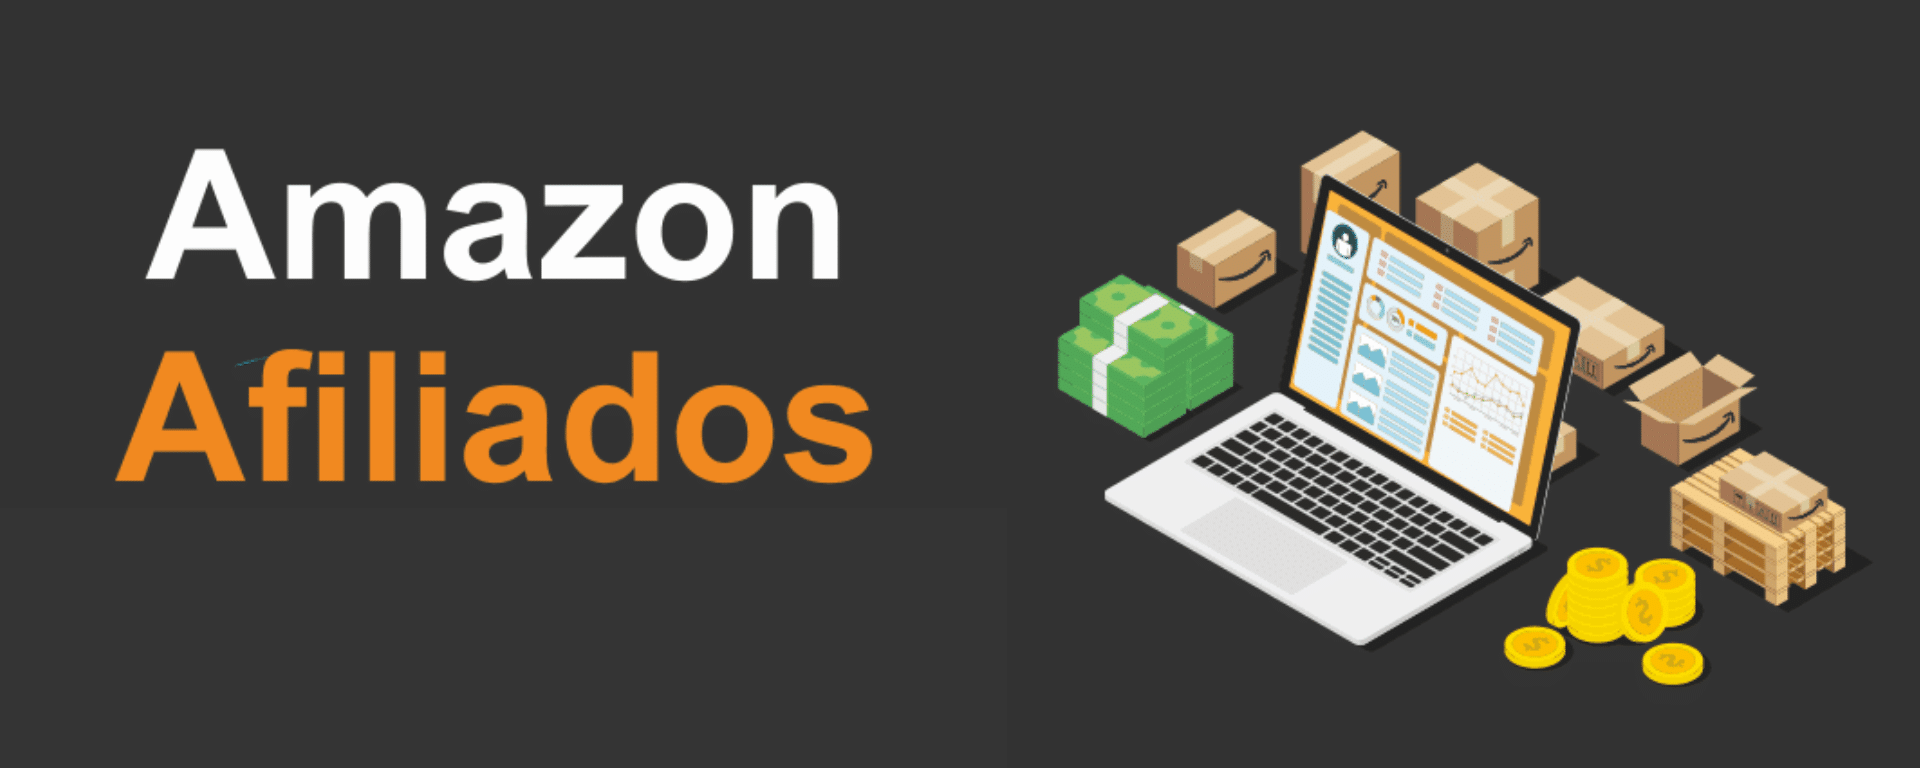 Amazon afiliados - Entenda como funciona o programa de associados